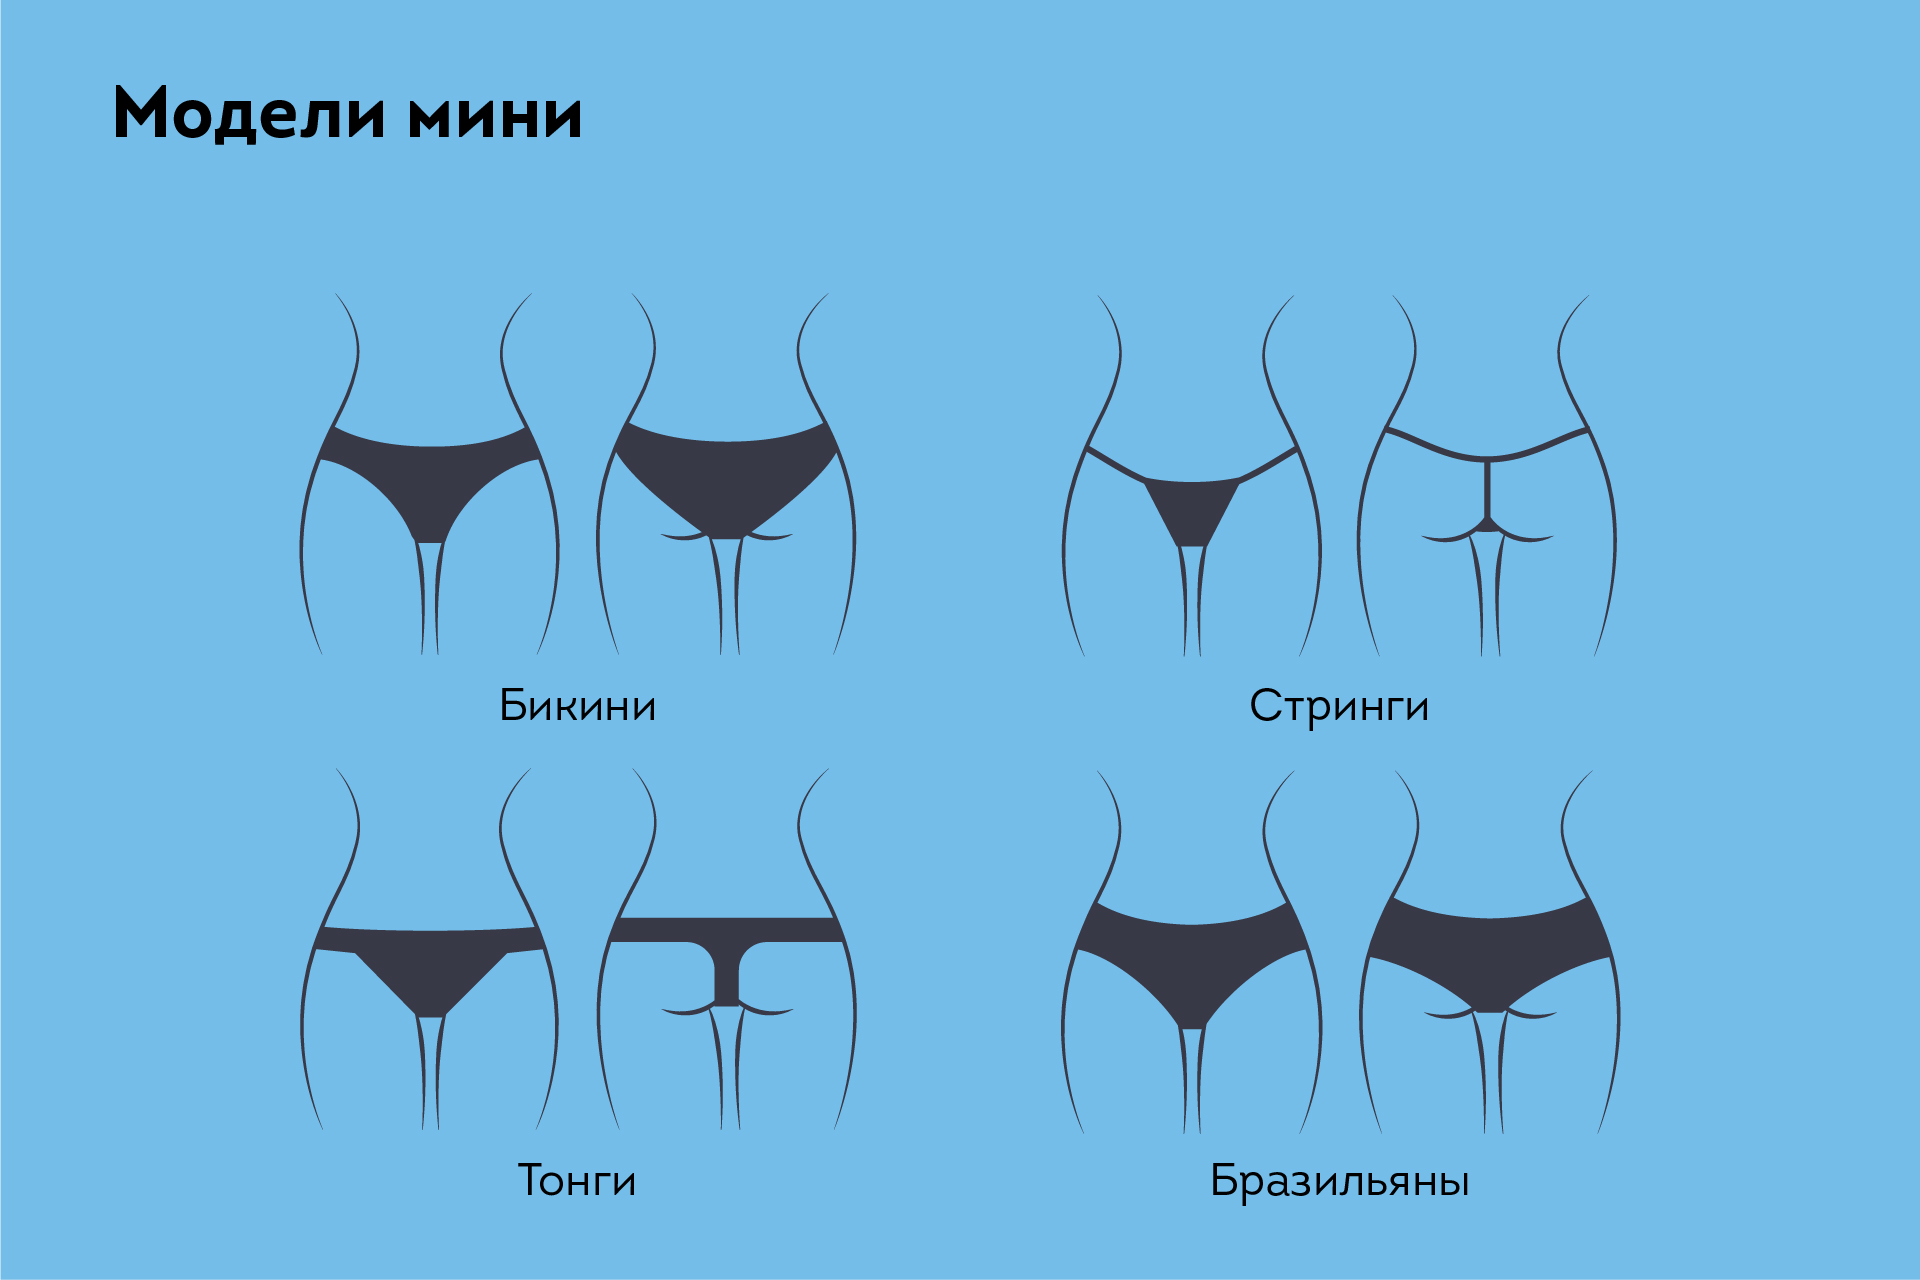 модели женских трусов типа мини